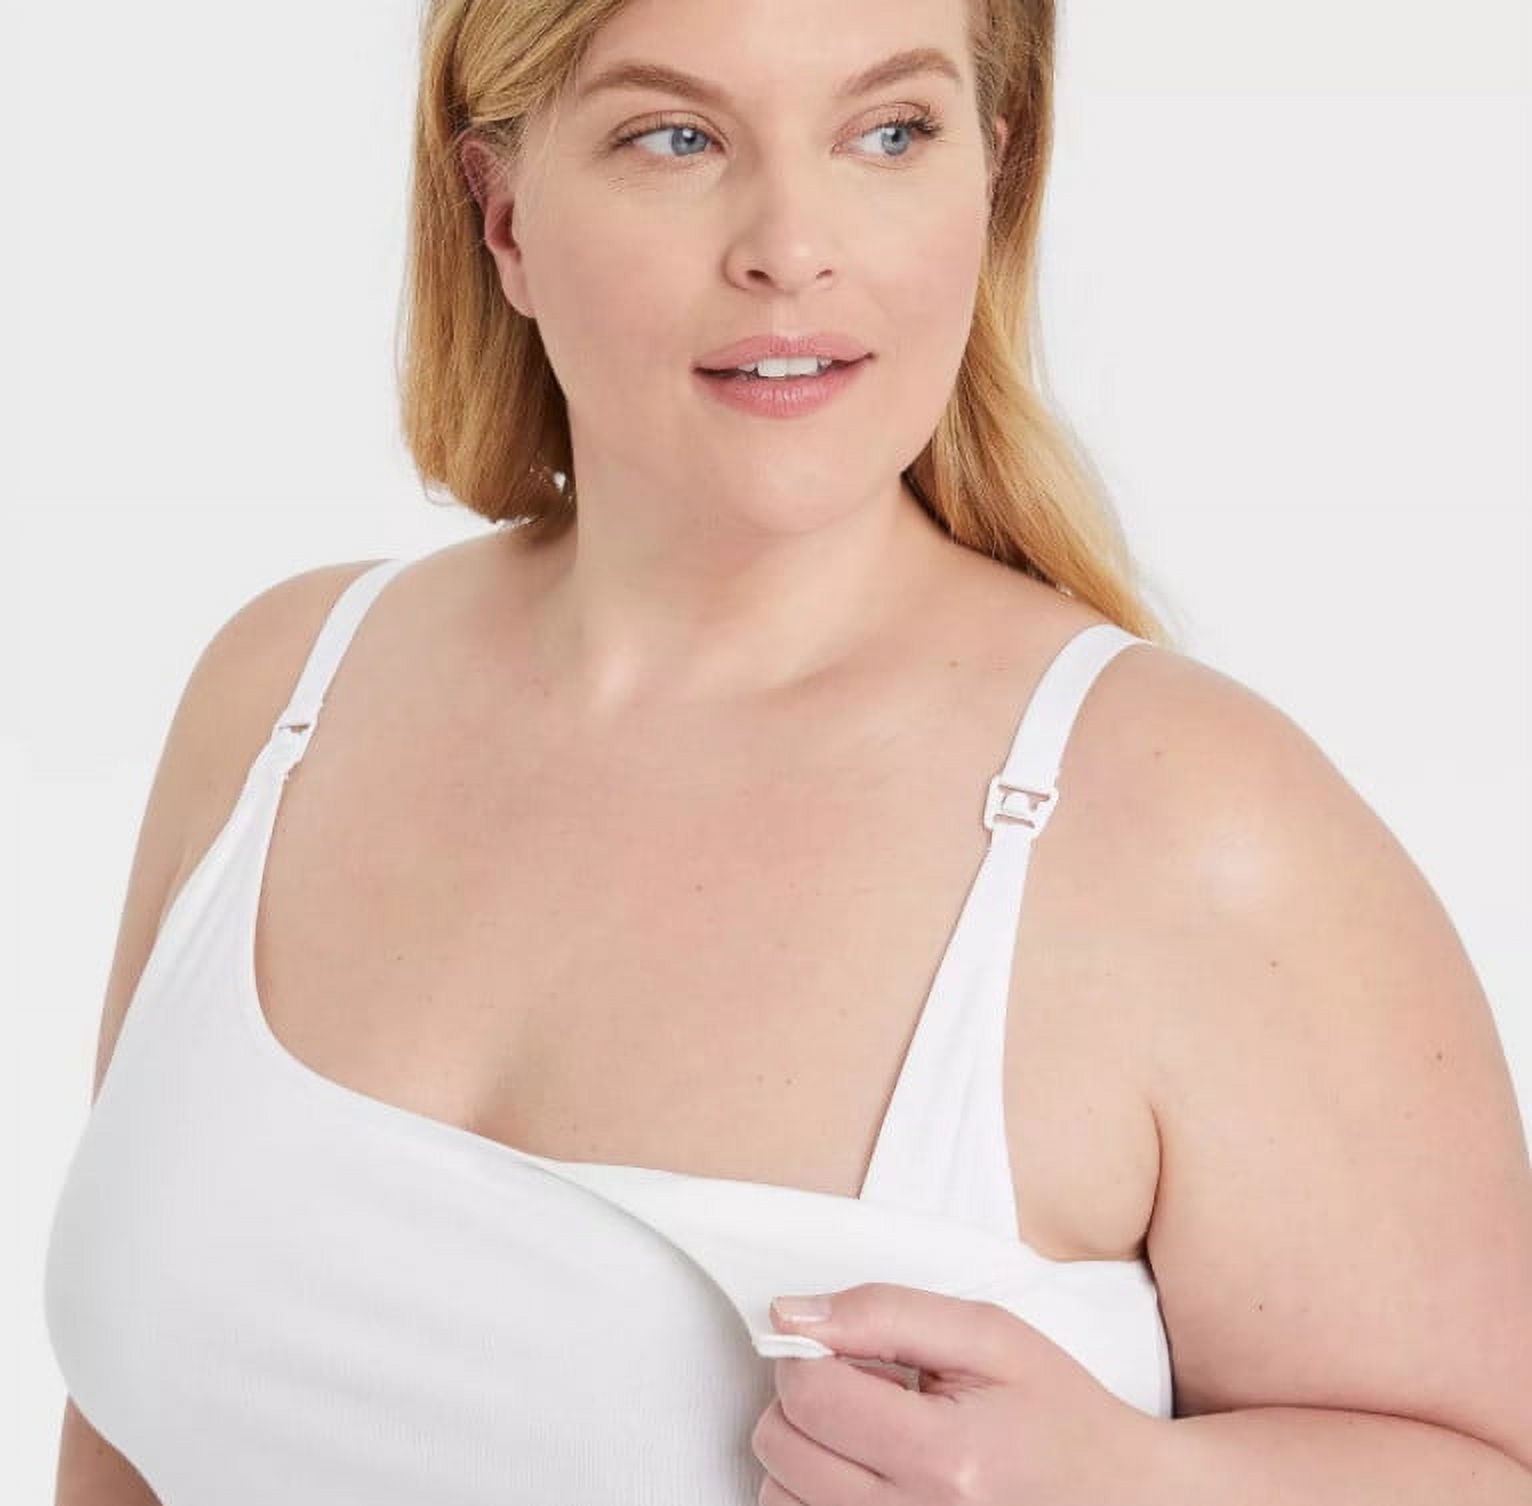 Gilligan O’Malley Women's Plus Size Nursing Cami - White - 2XL - New